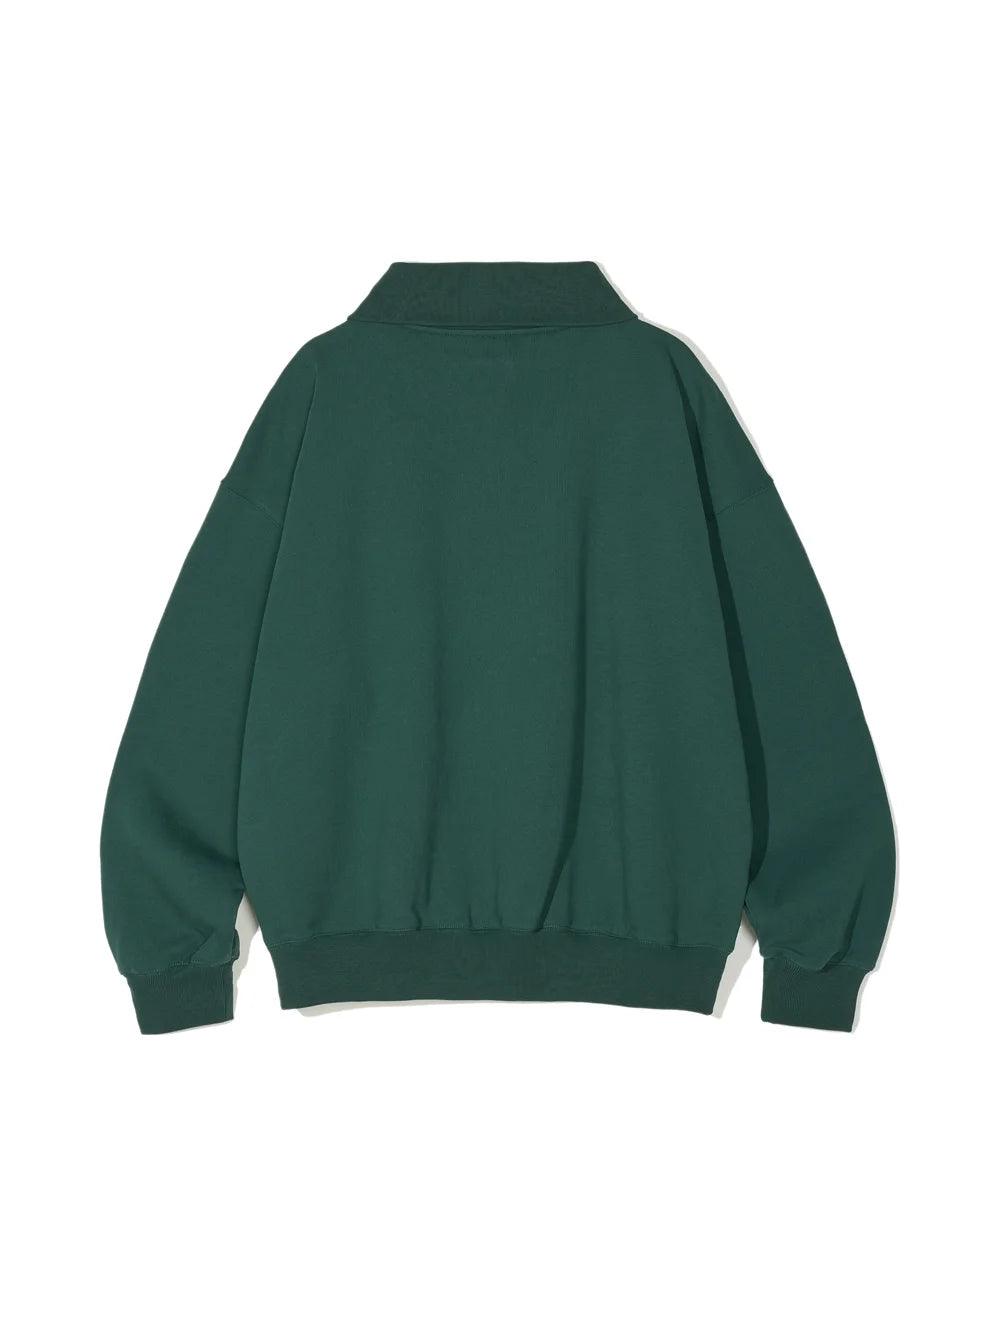 Partimento Collar Zip-up Pullover Sweatshirt - Green -